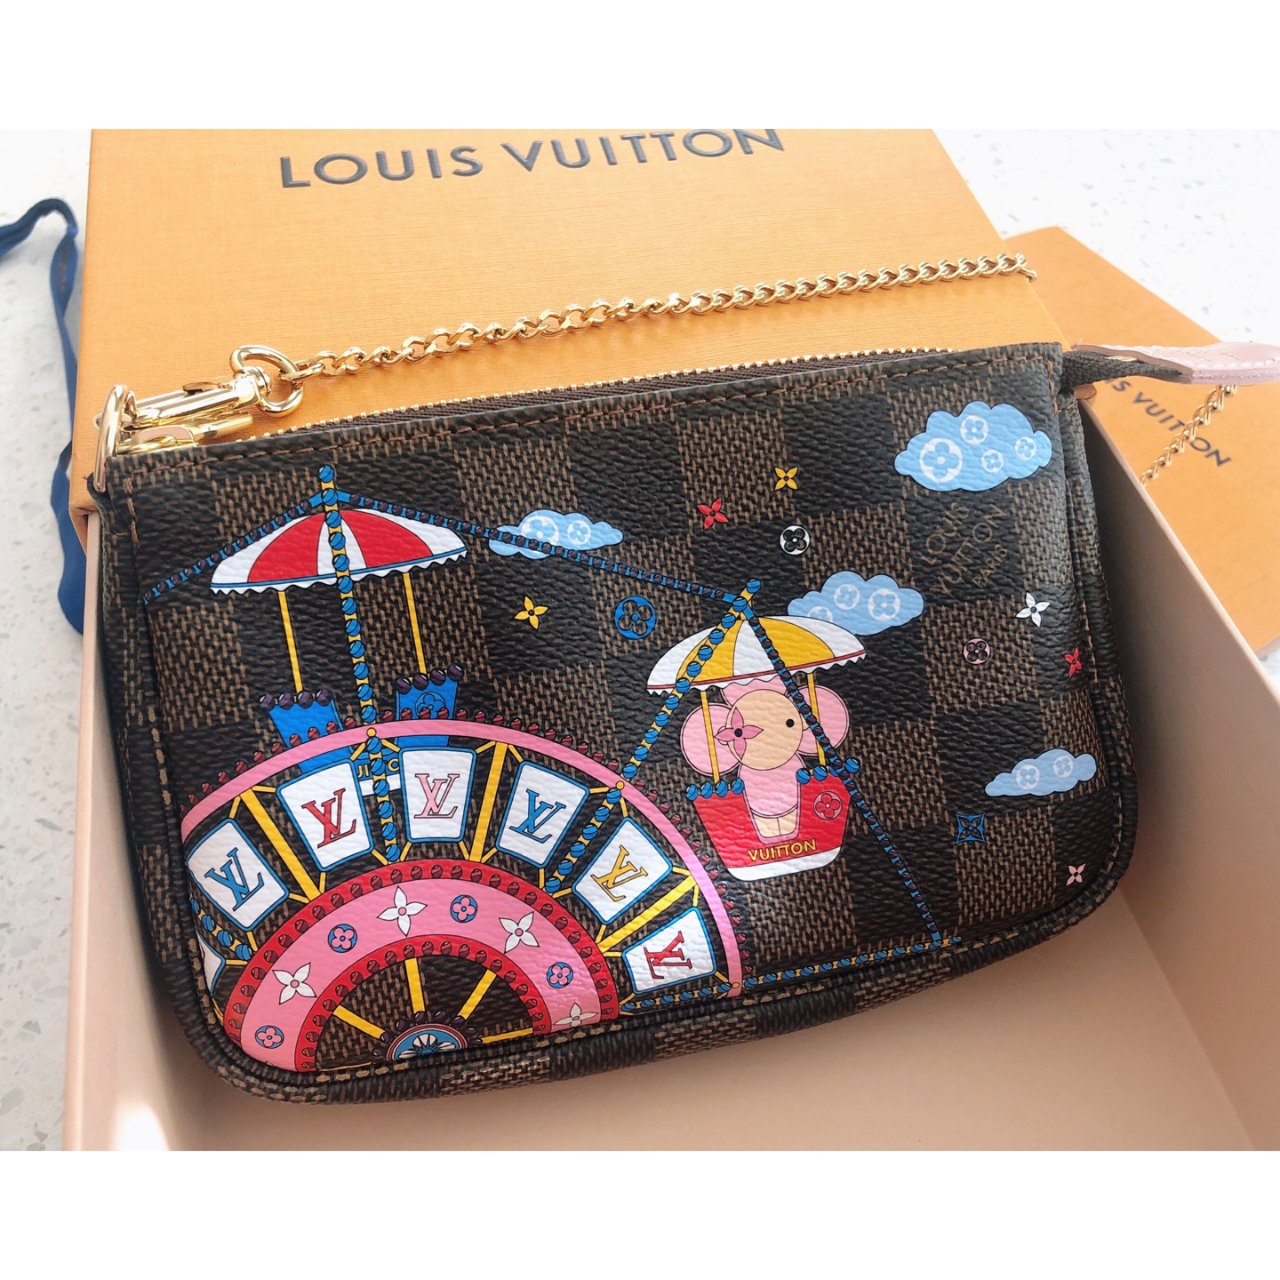 Louis Vuitton 路易·威登,470美元